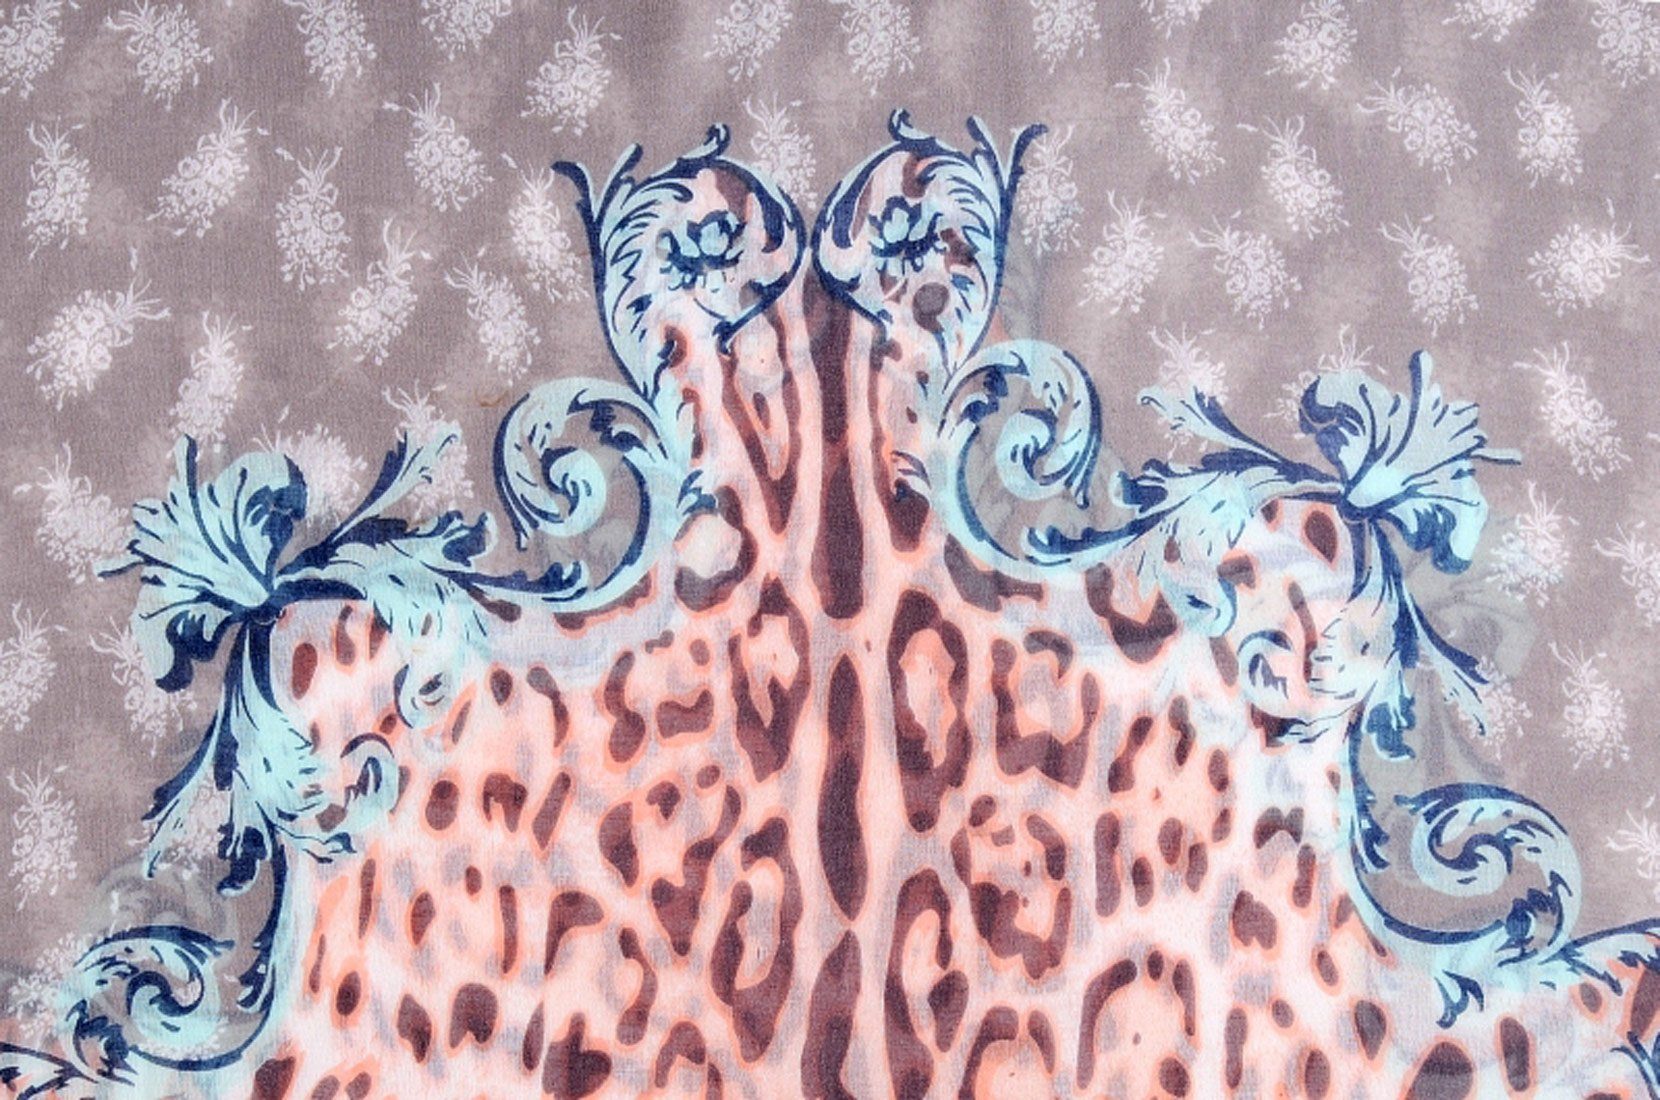 Faera Loop, Damen leicht mehreren Farben italienisch-römisches Loopschal Schal sand und Leopardenmuster Rundschal weich